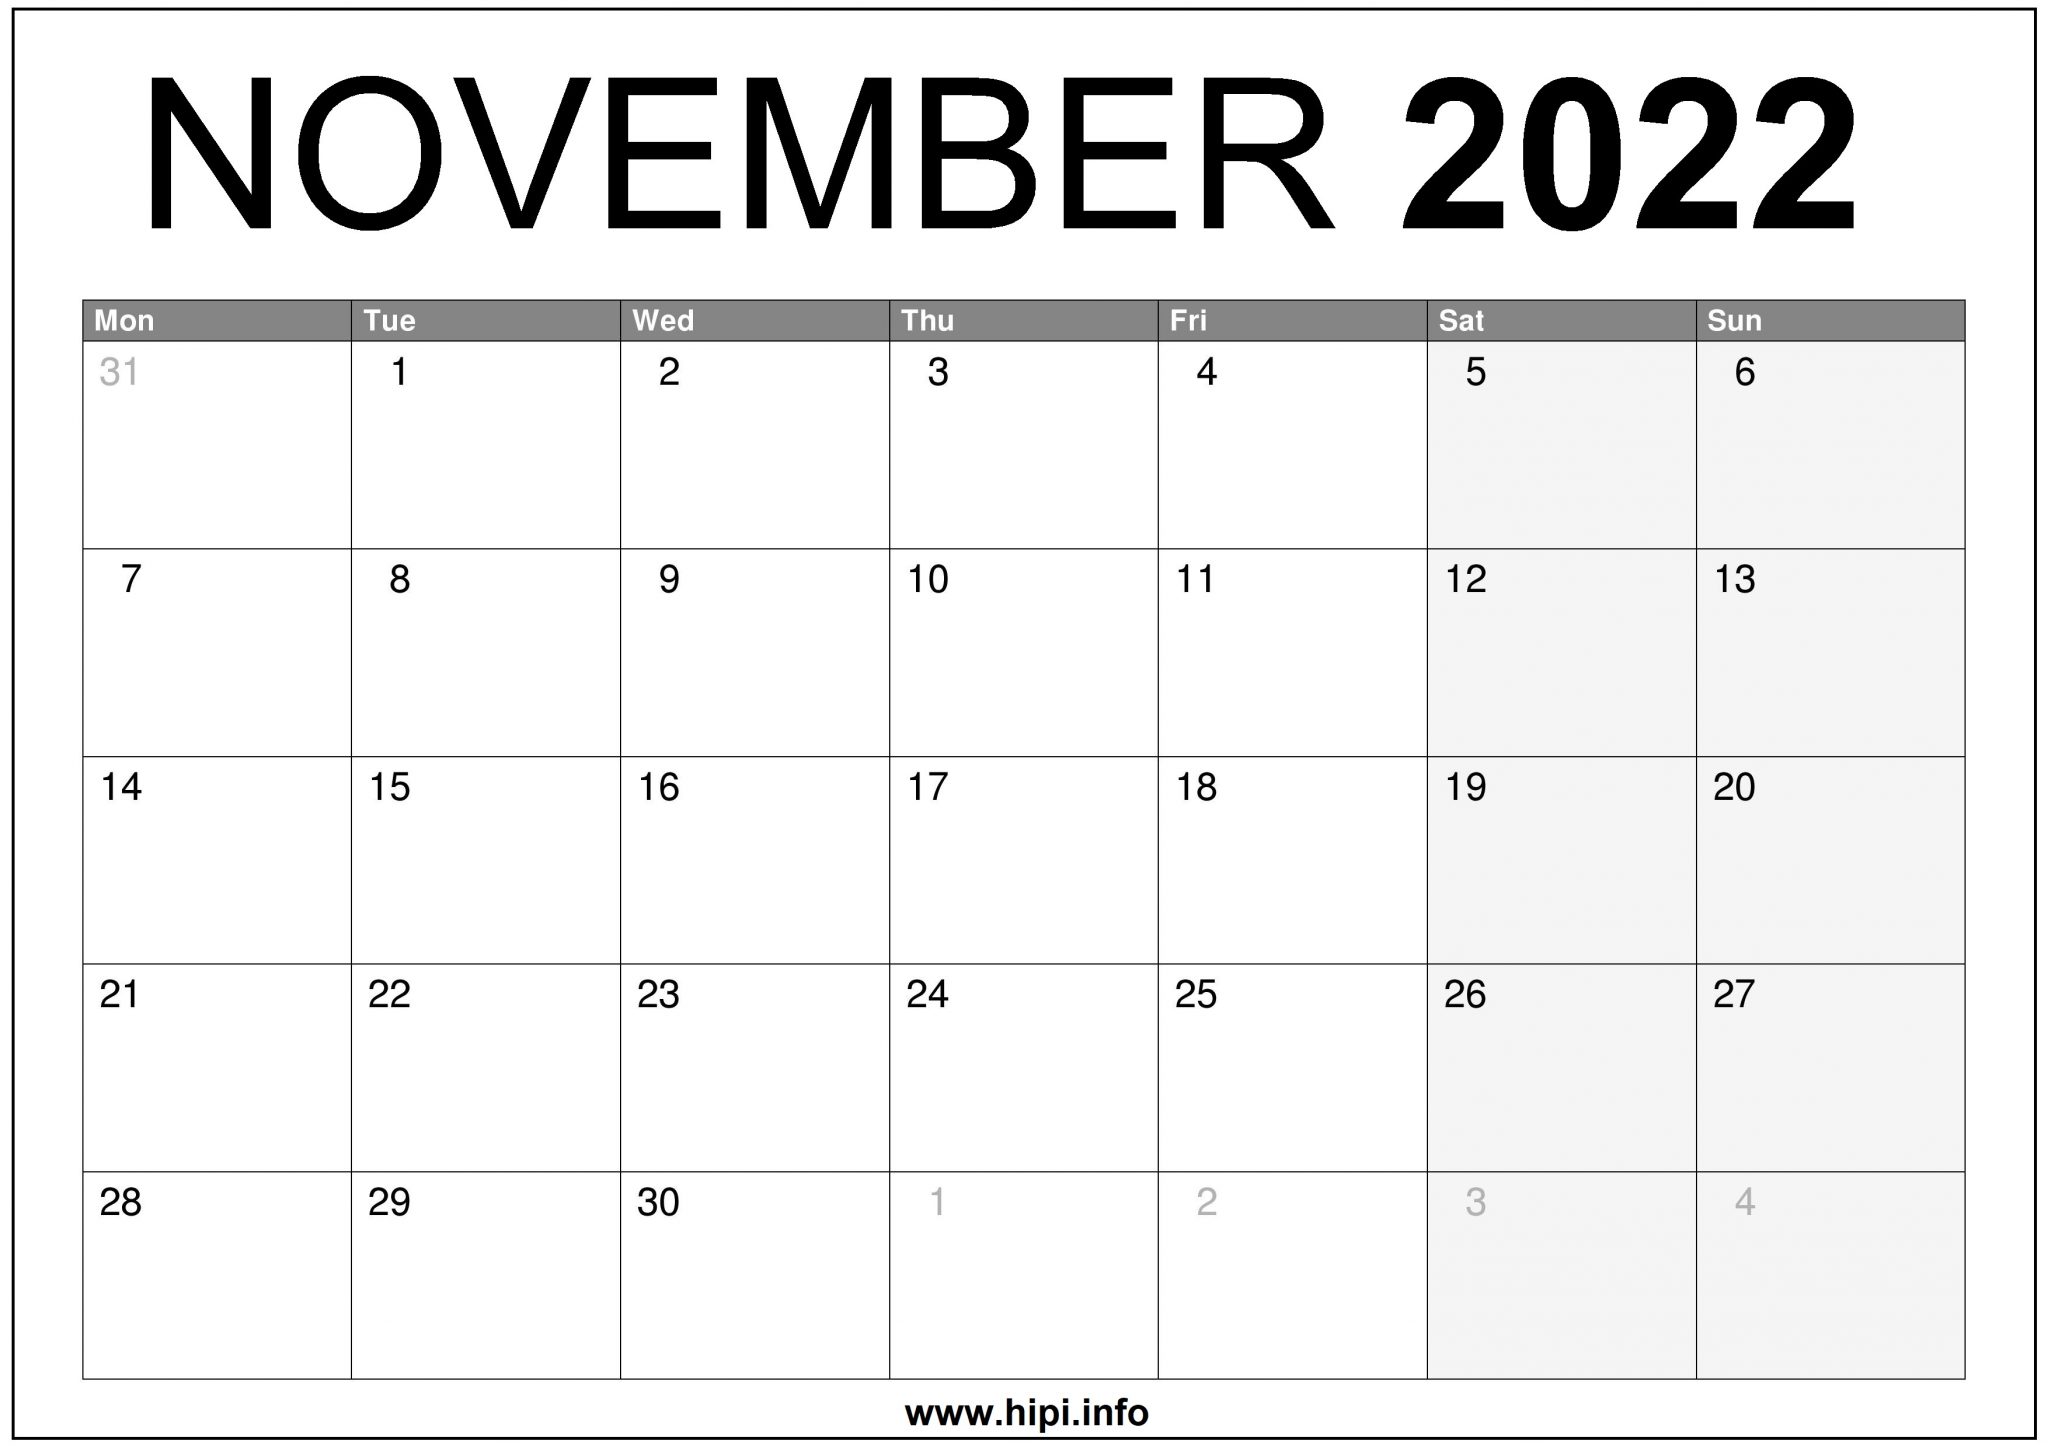 November 2022 UK Calendar Printable Free Hipi.info Calendars